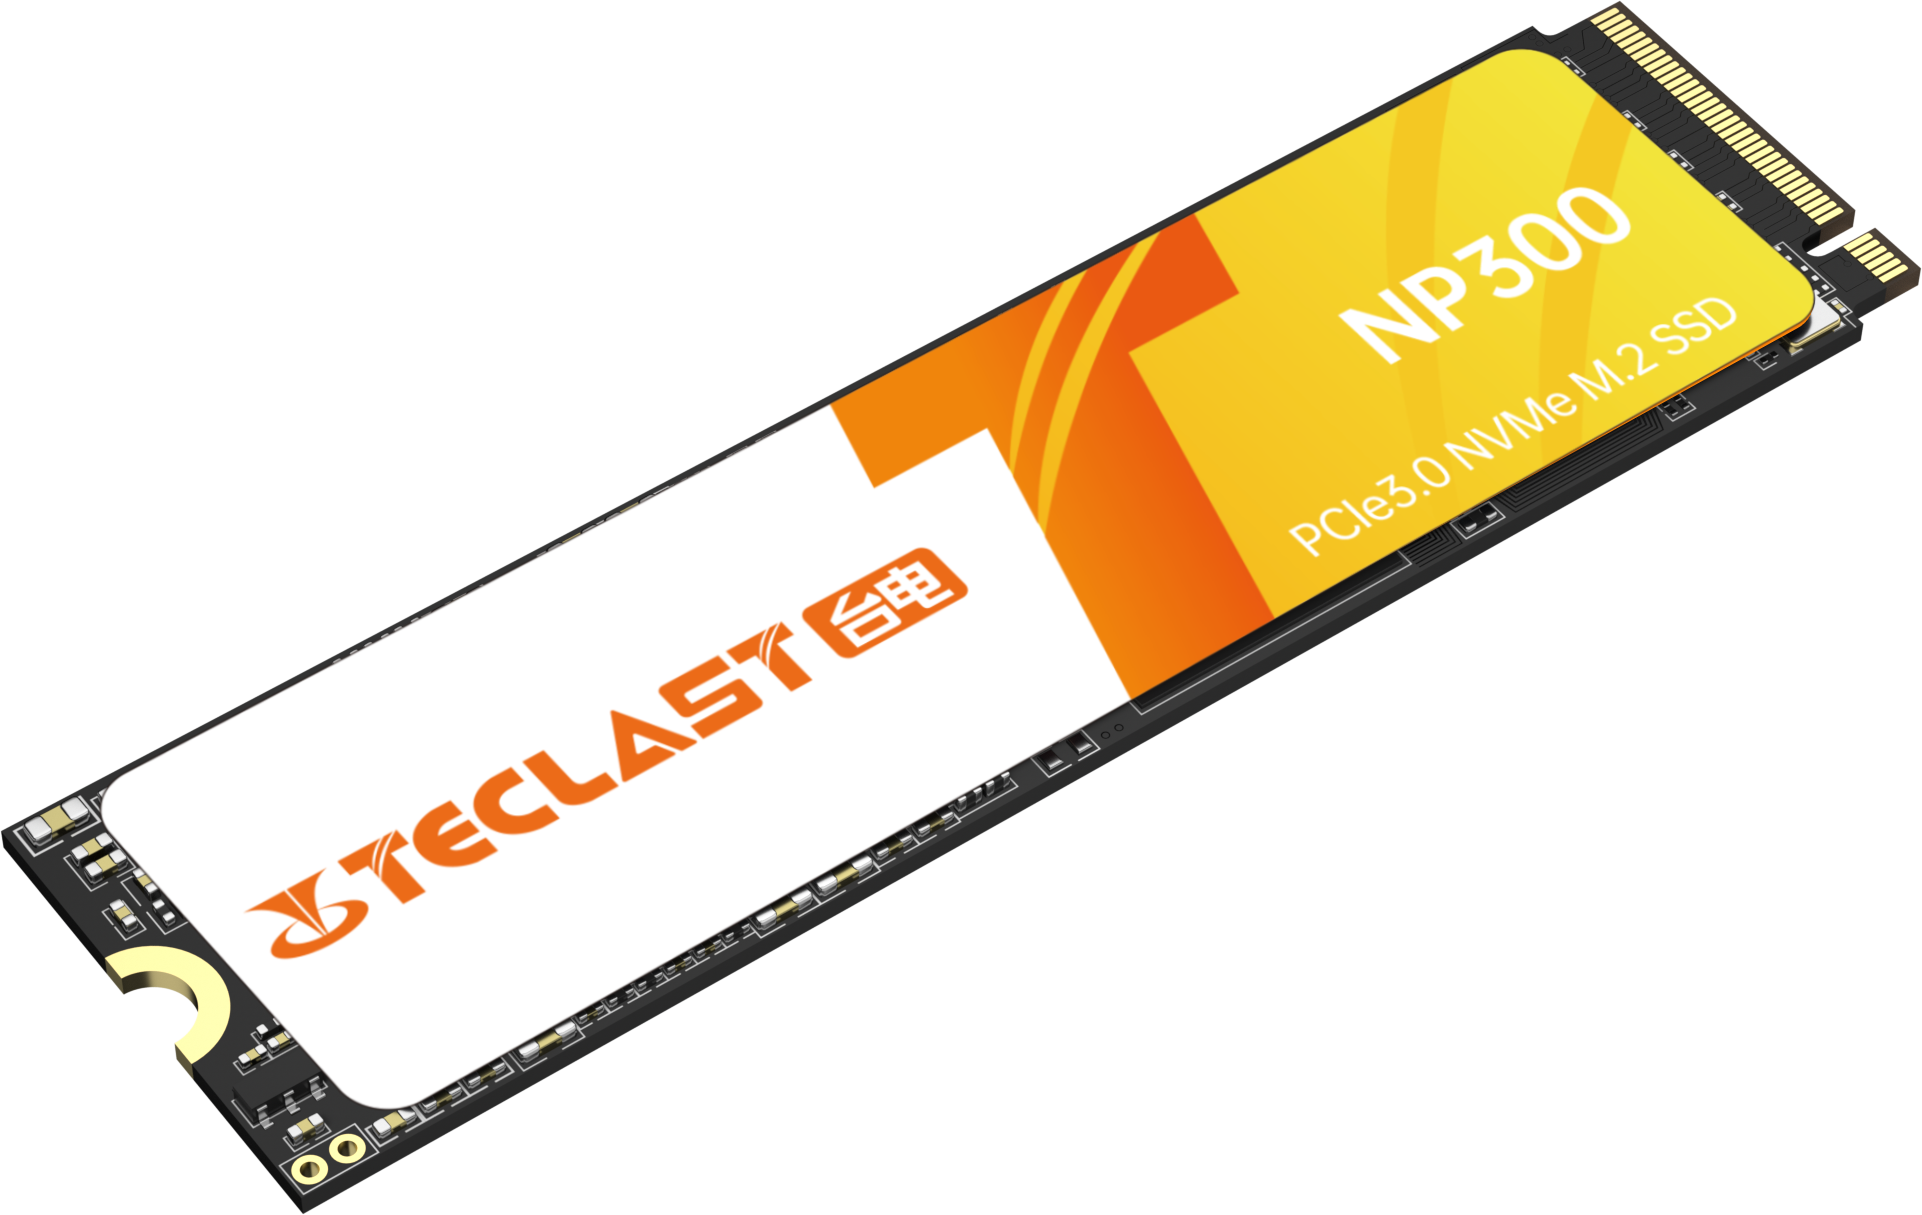 NP300 NVMe SSD